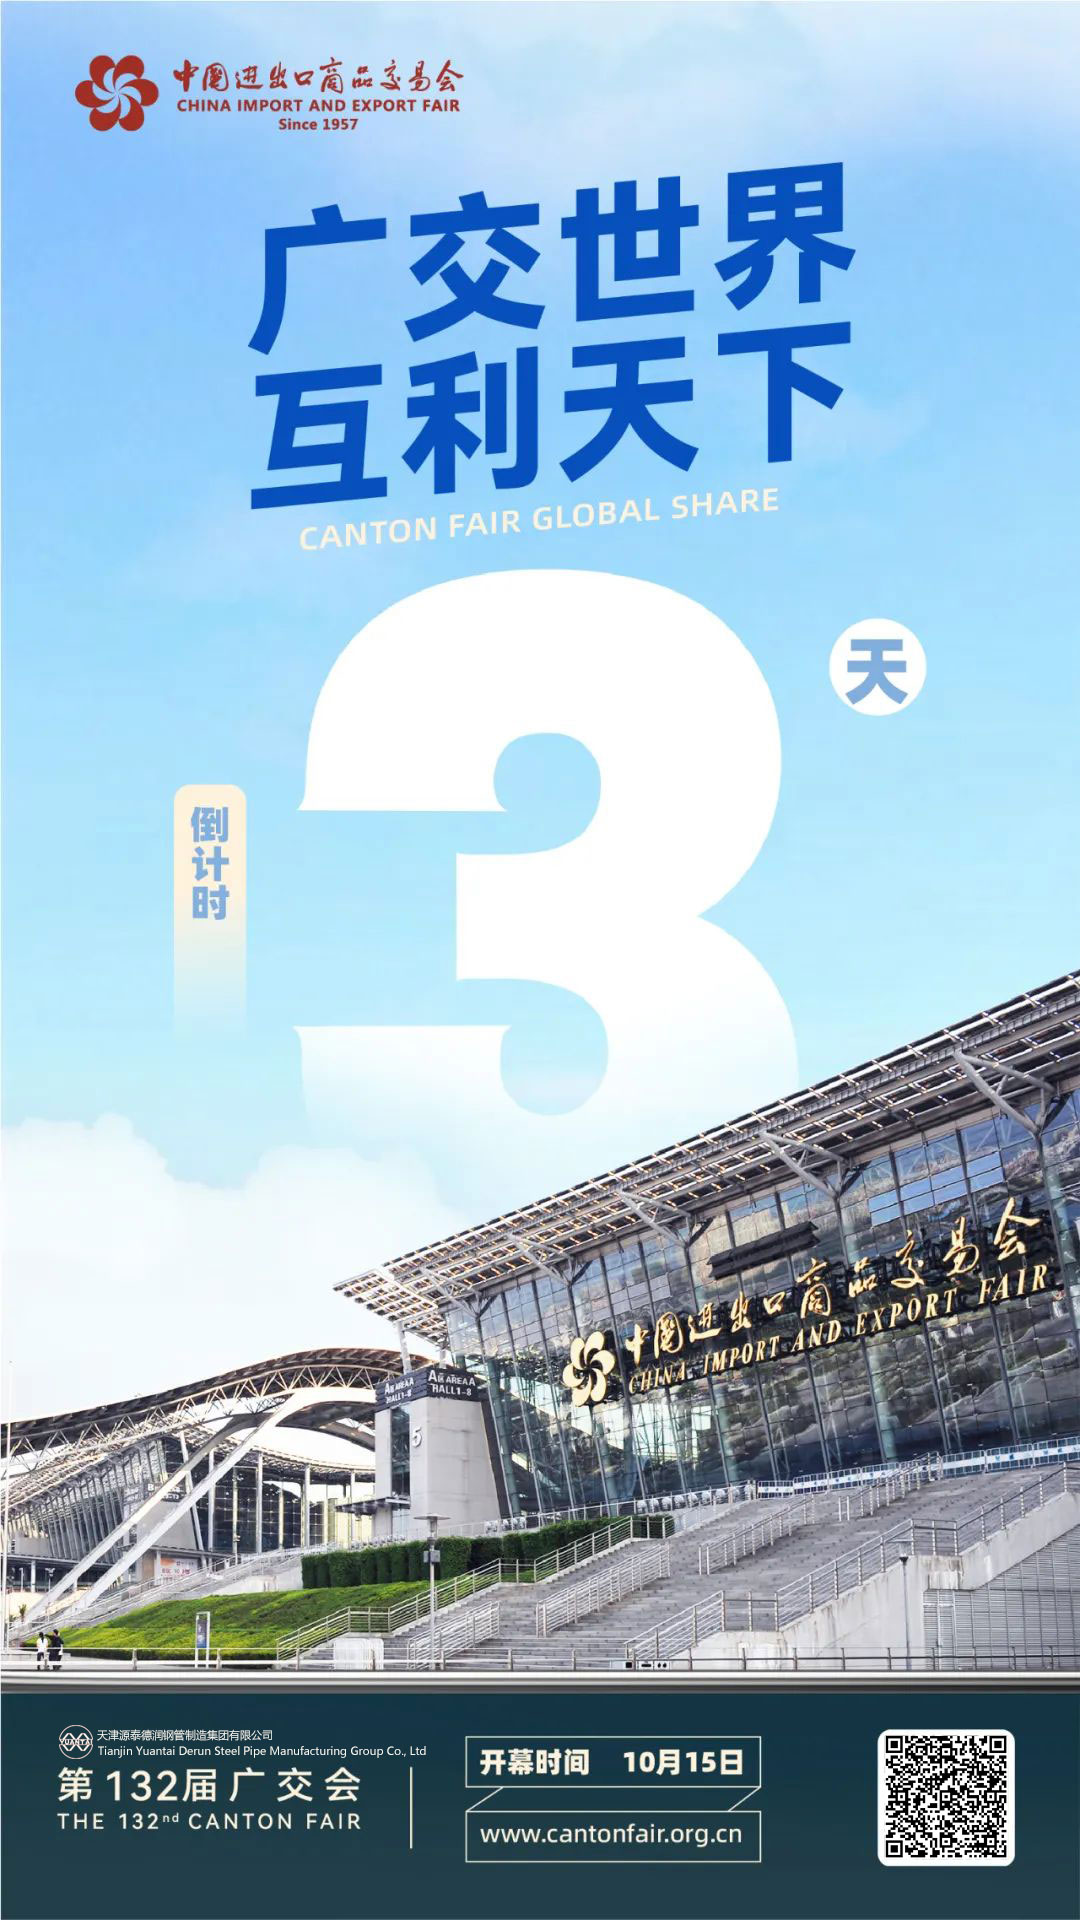 A 132a Fiera di Canton hà intrutu in 3 ghjorni di countdown - Tianjin Yuantaiderun Steel Pipe Manufacturing Group Co., Ltd